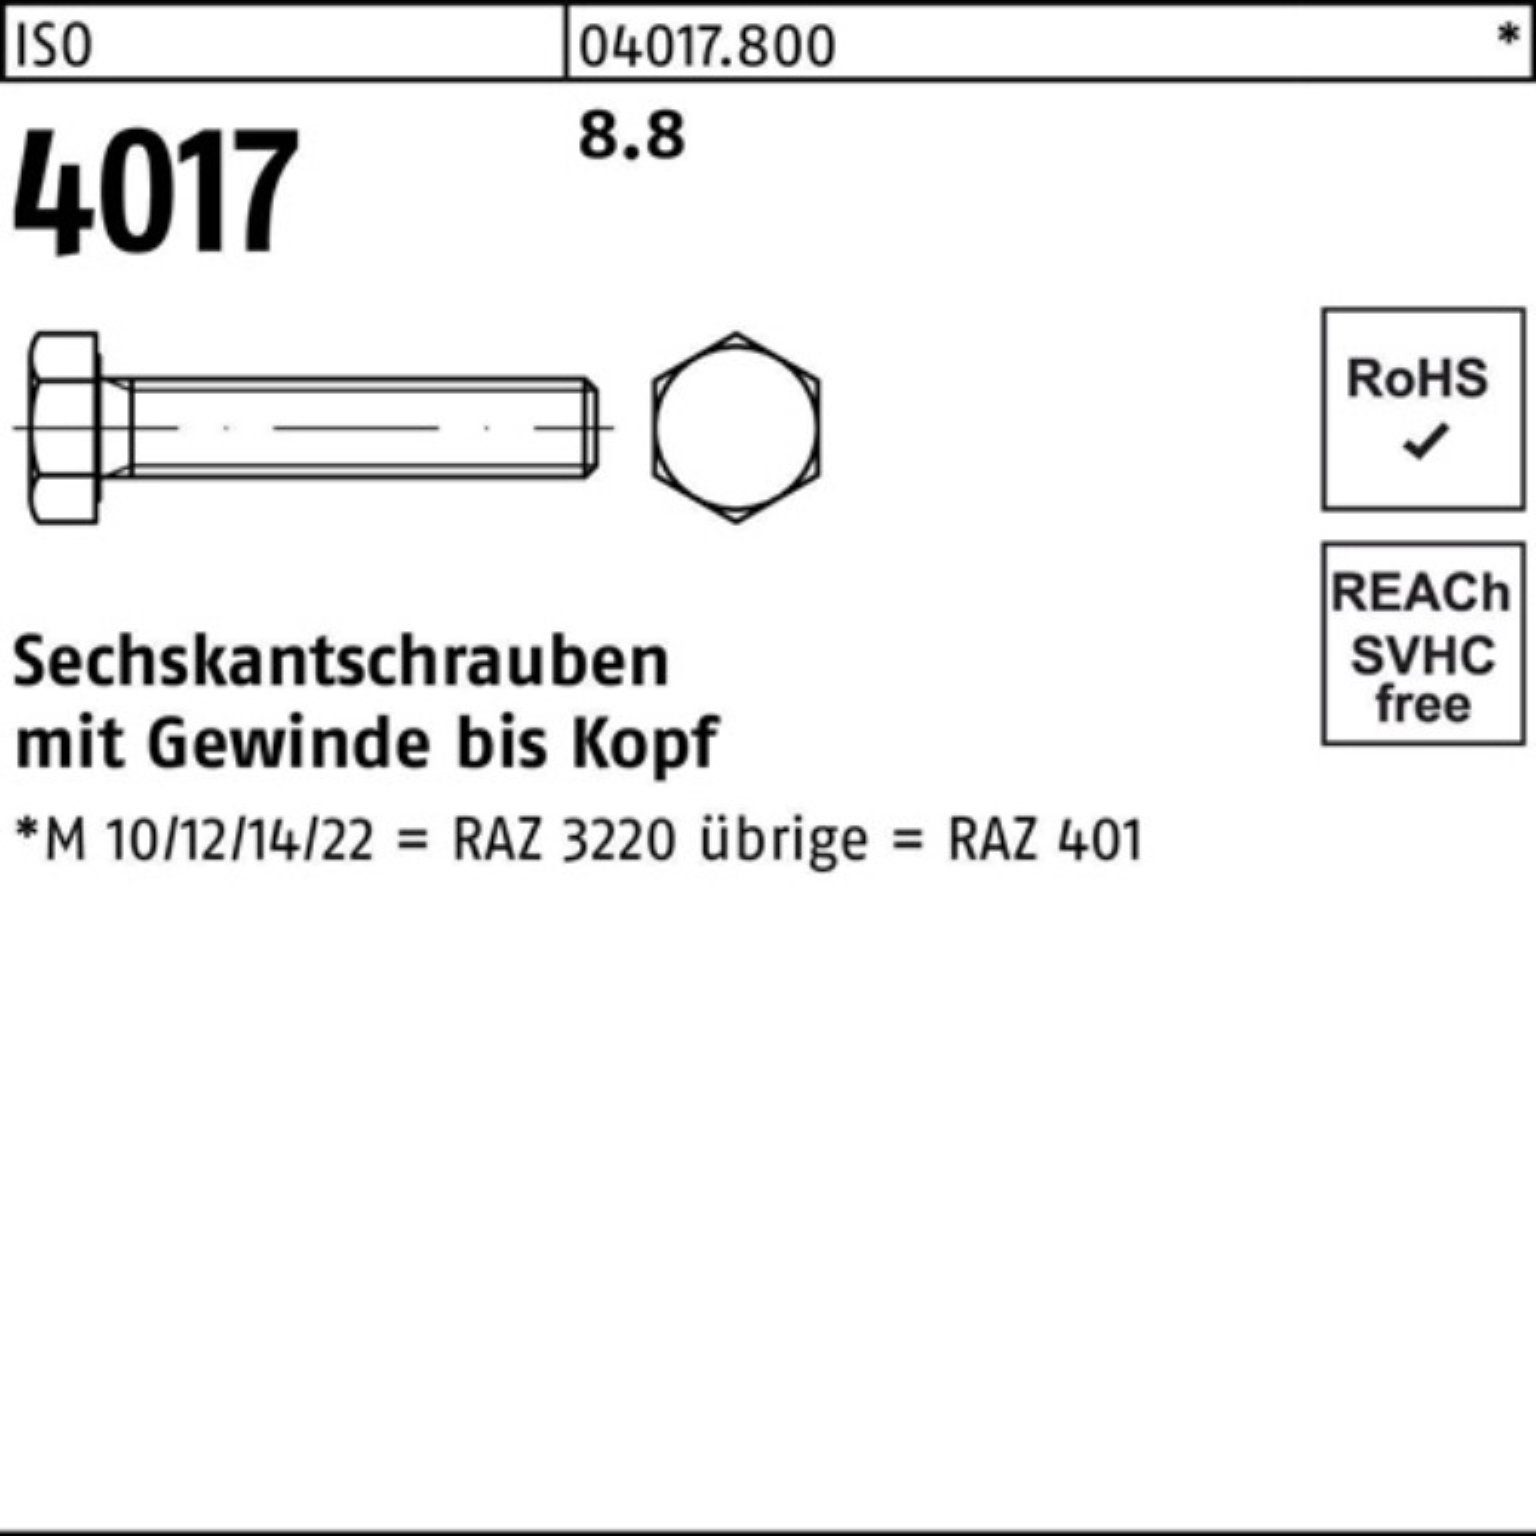 Bufab Sechskantschraube 200er Sechskantschraube 200 8.8 ISO VG 401 Stück 4017 ISO M8x Pack 45